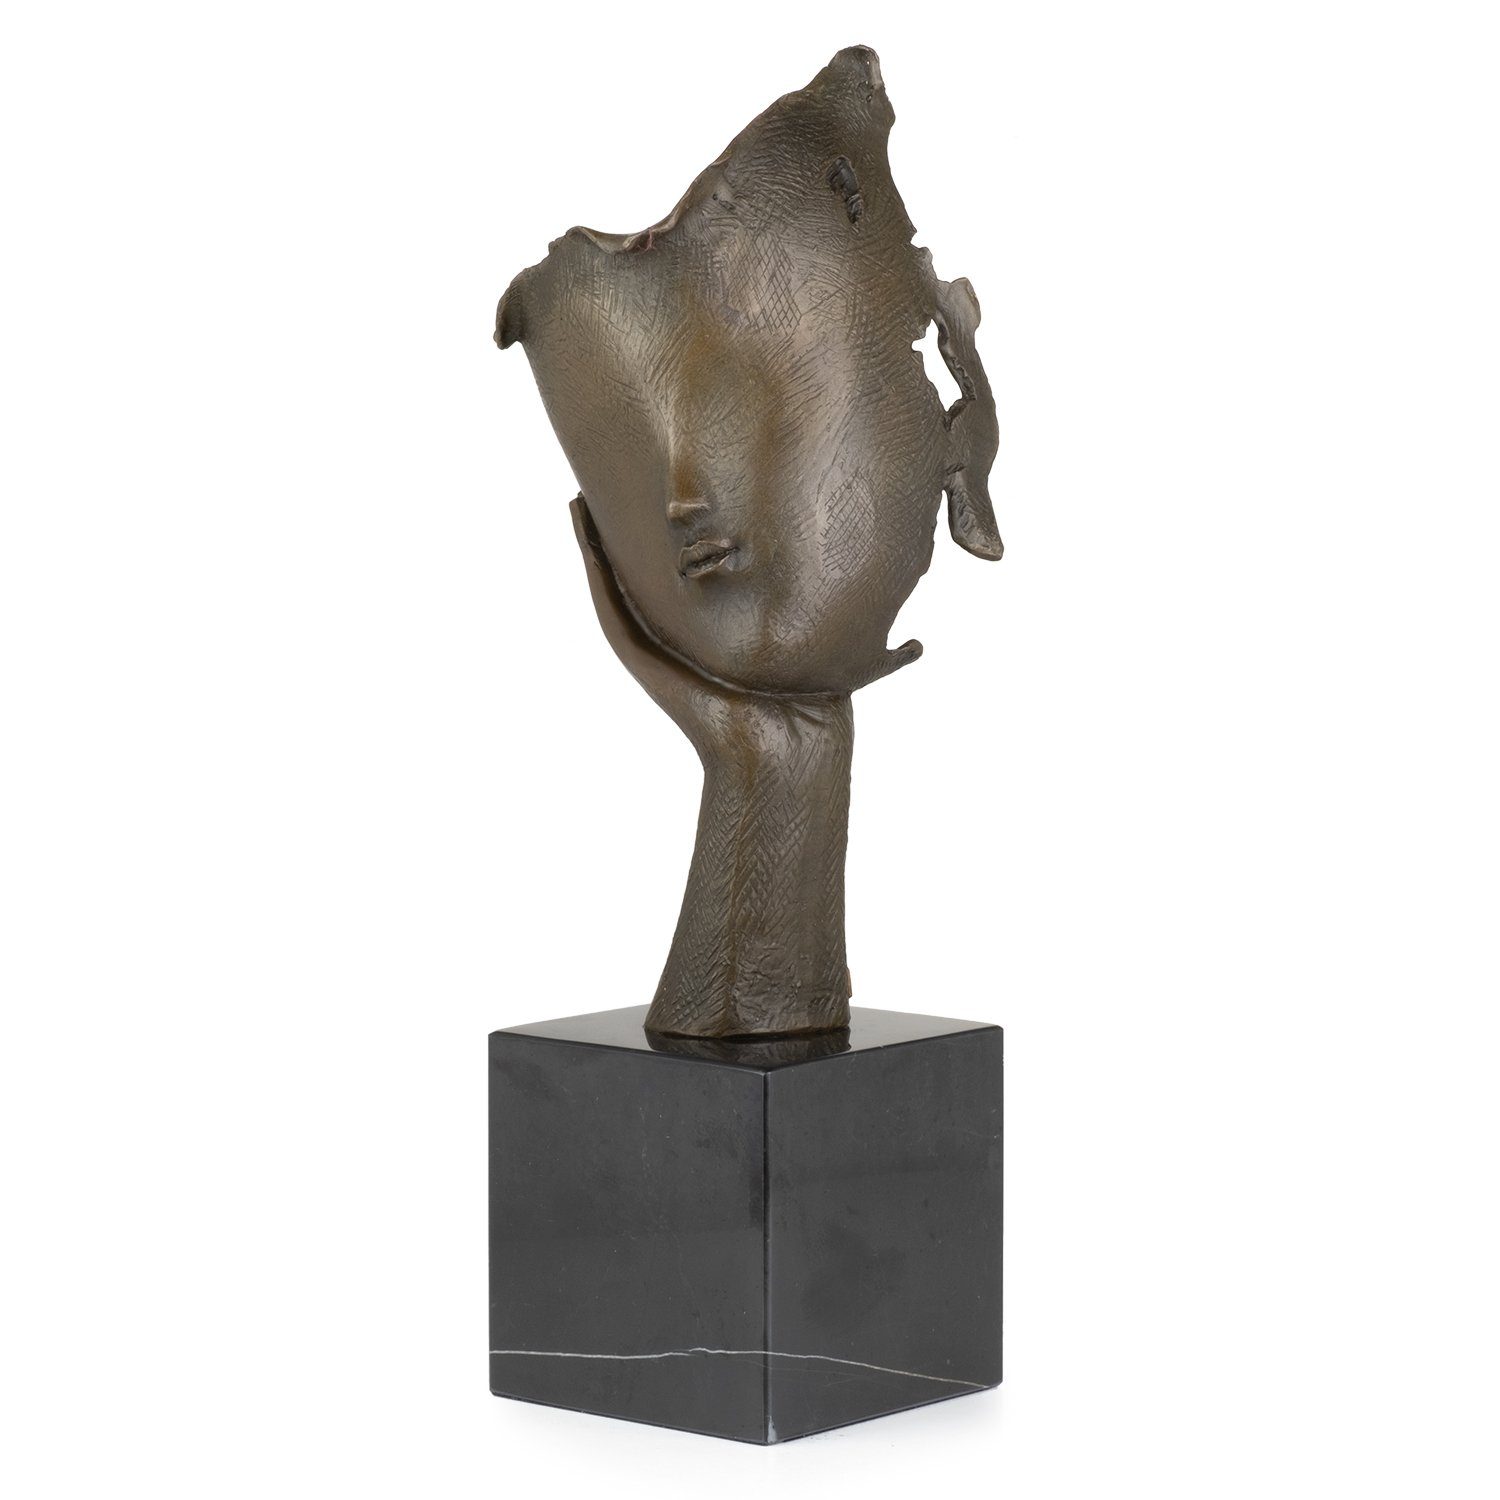 Moritz Skulptur Bronzefigur Abstraktes Figuren Statue Skulpturen Gesicht nachdenklich, Antik-Stil